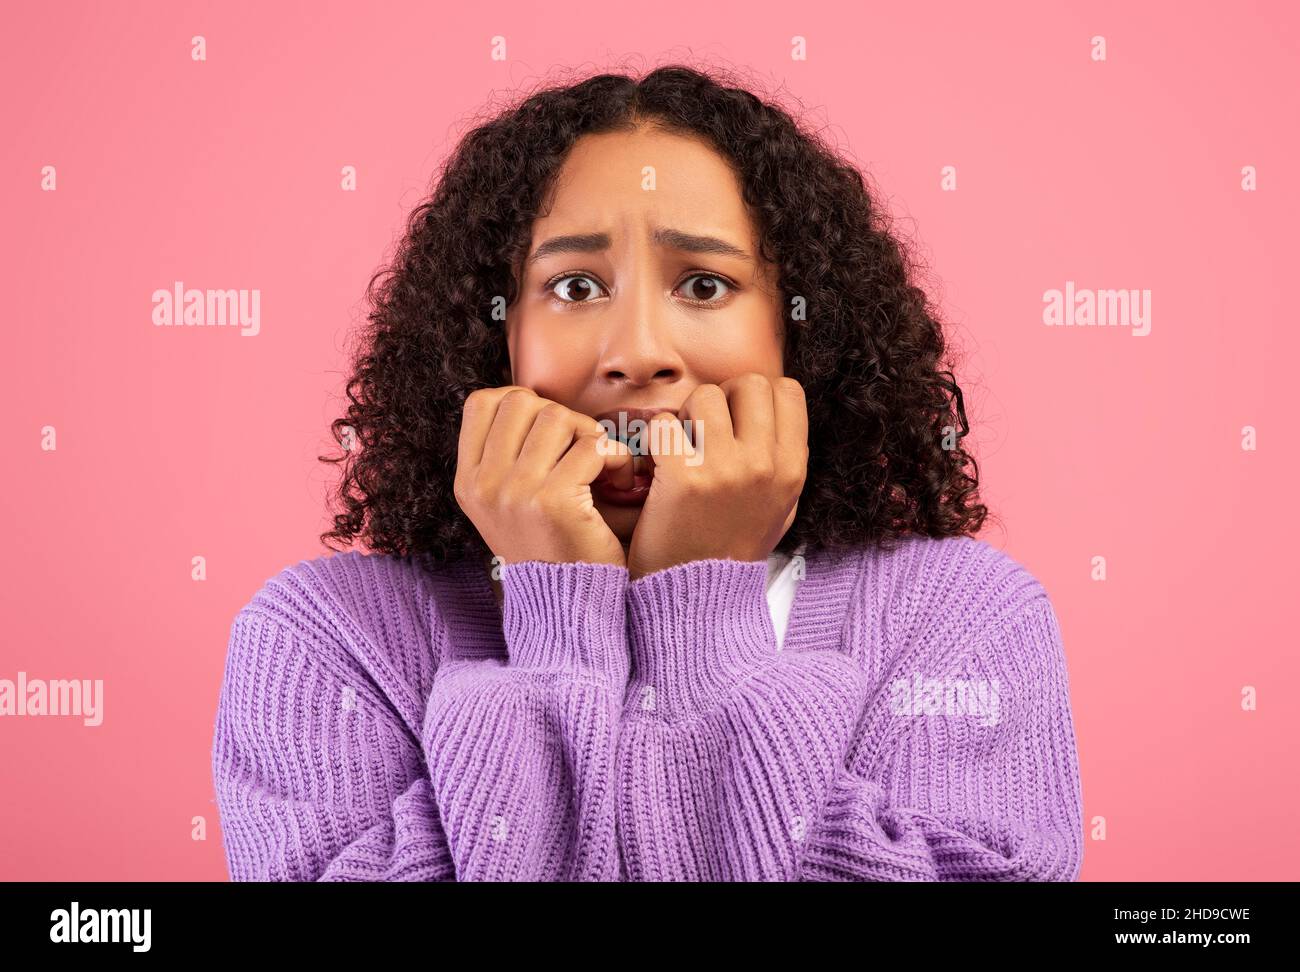 Joven mujer negra que se siente asustada, mordiendo uñas en pánico sobre el fondo rosa del estudio. Concepto de emociones humanas negativas Foto de stock